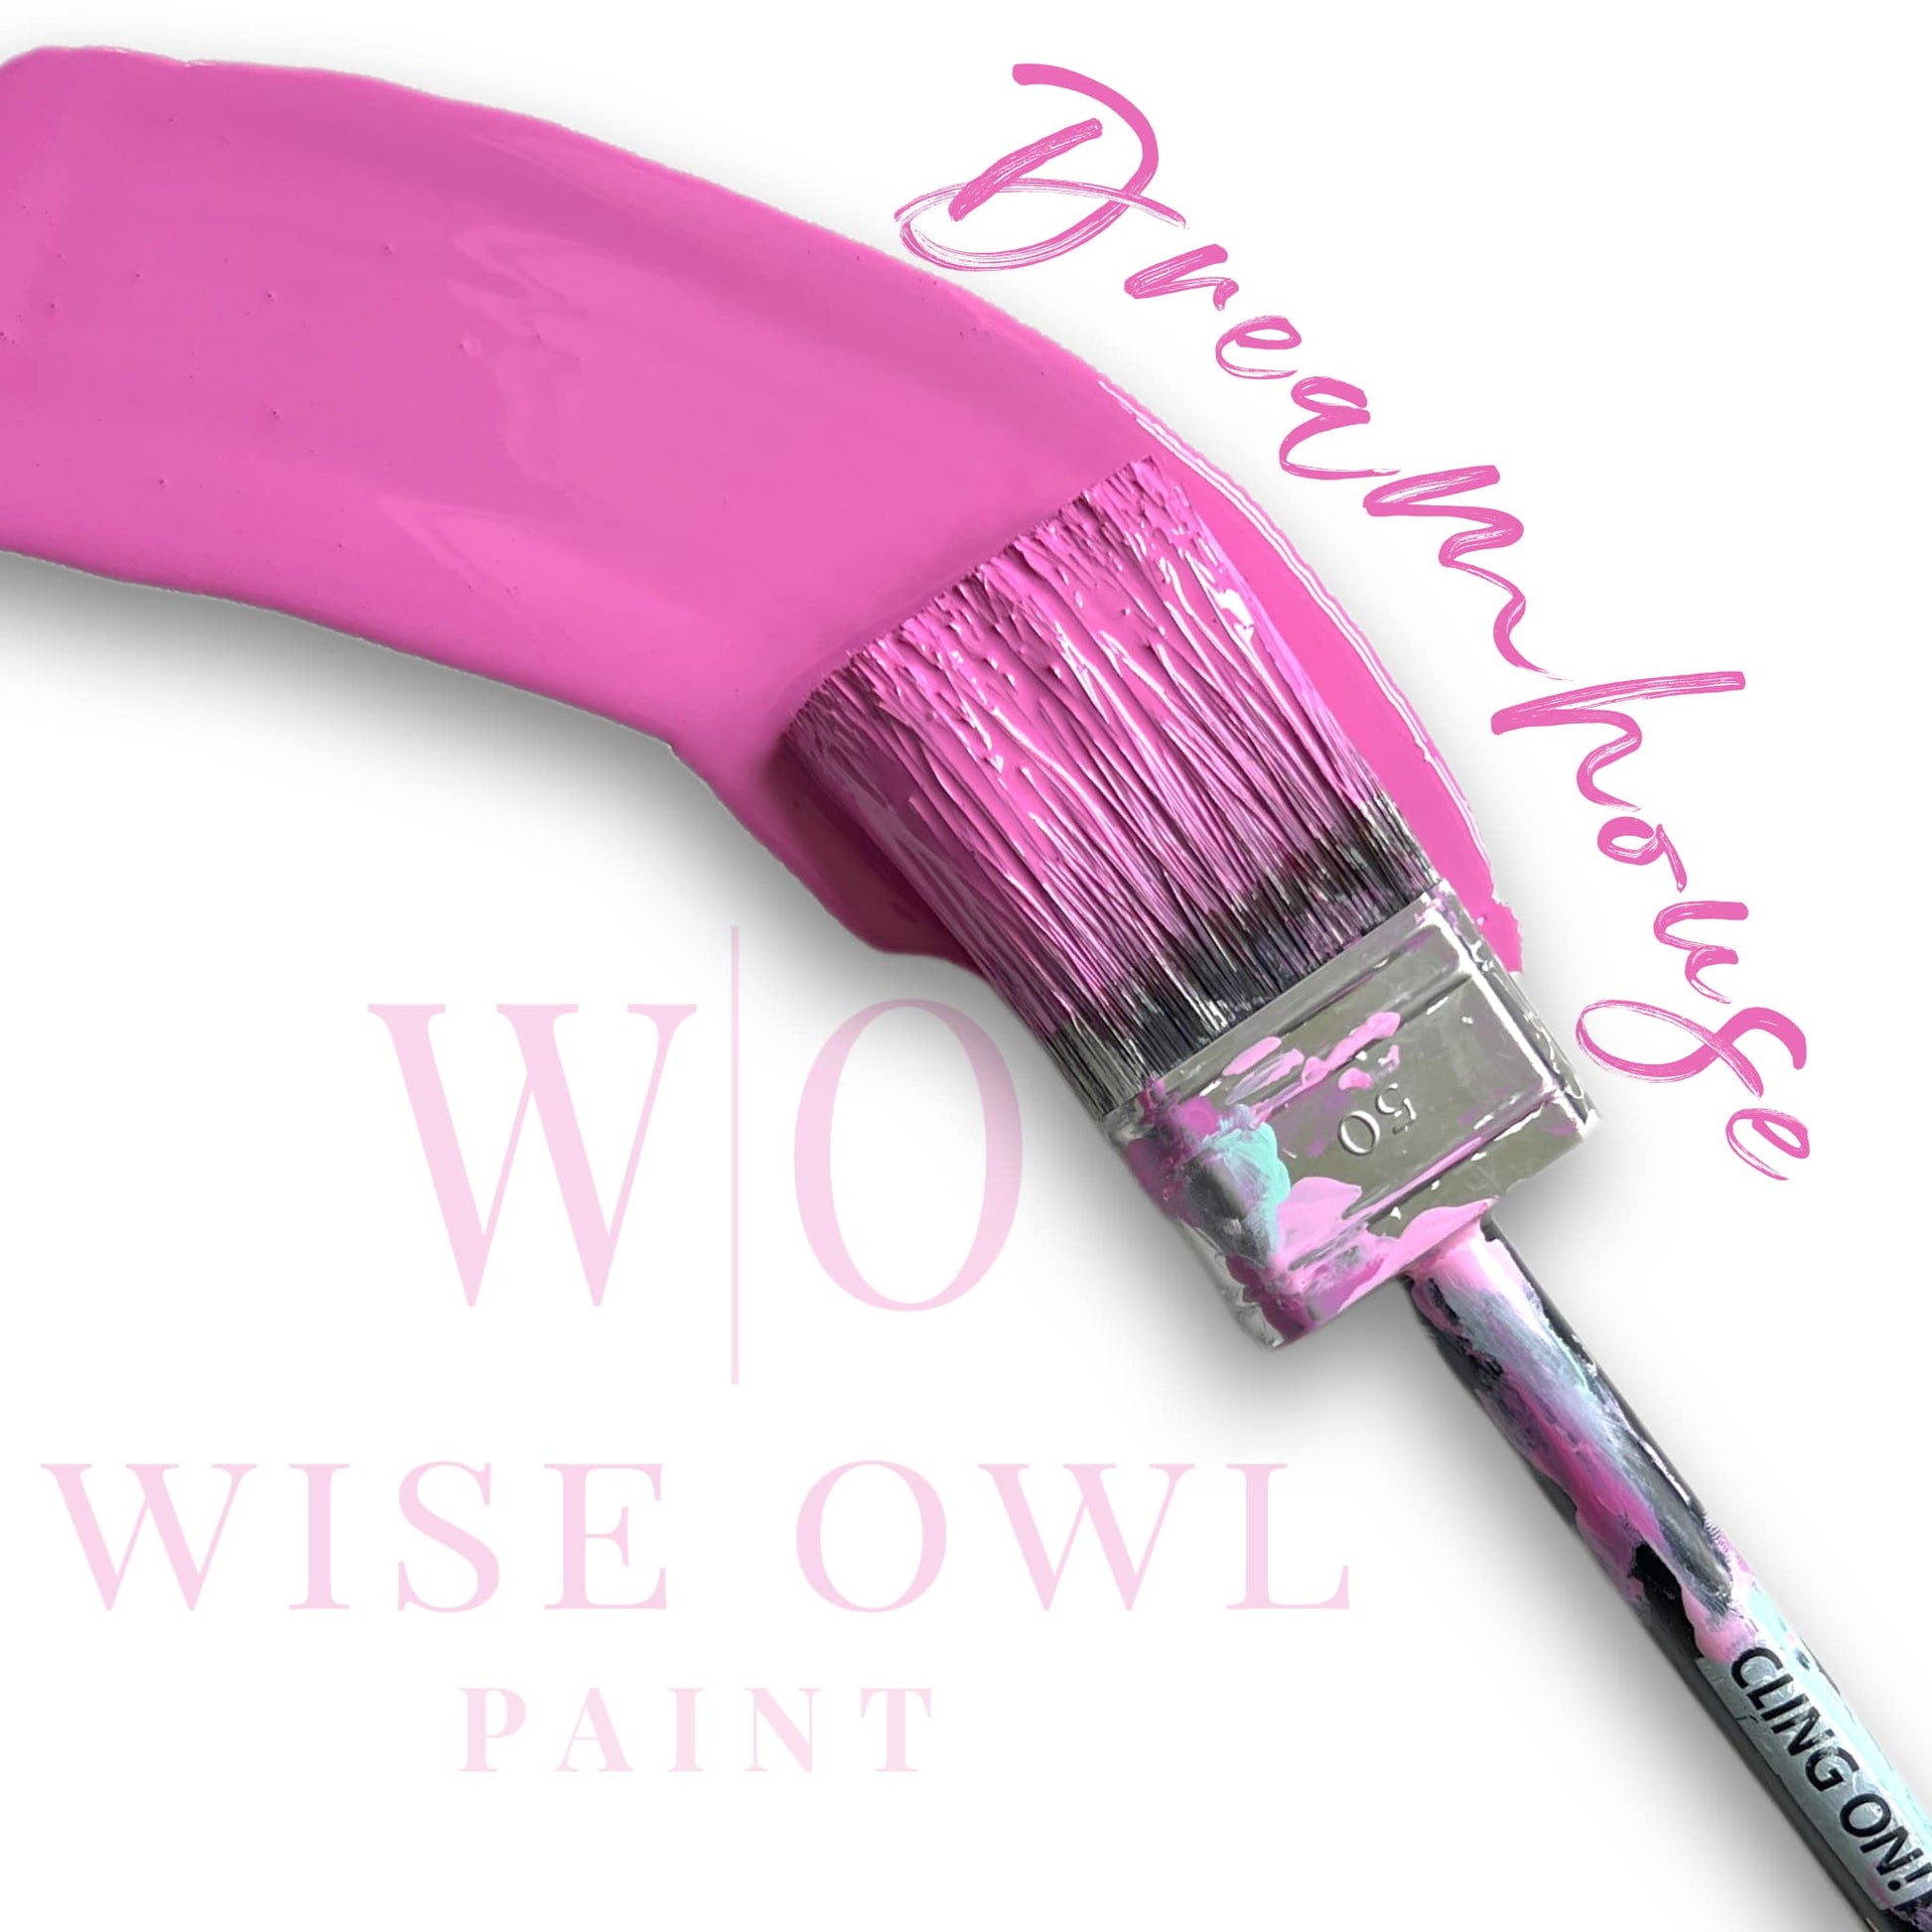 One Hour Enamel Paint Colors - Wise Owl Paint